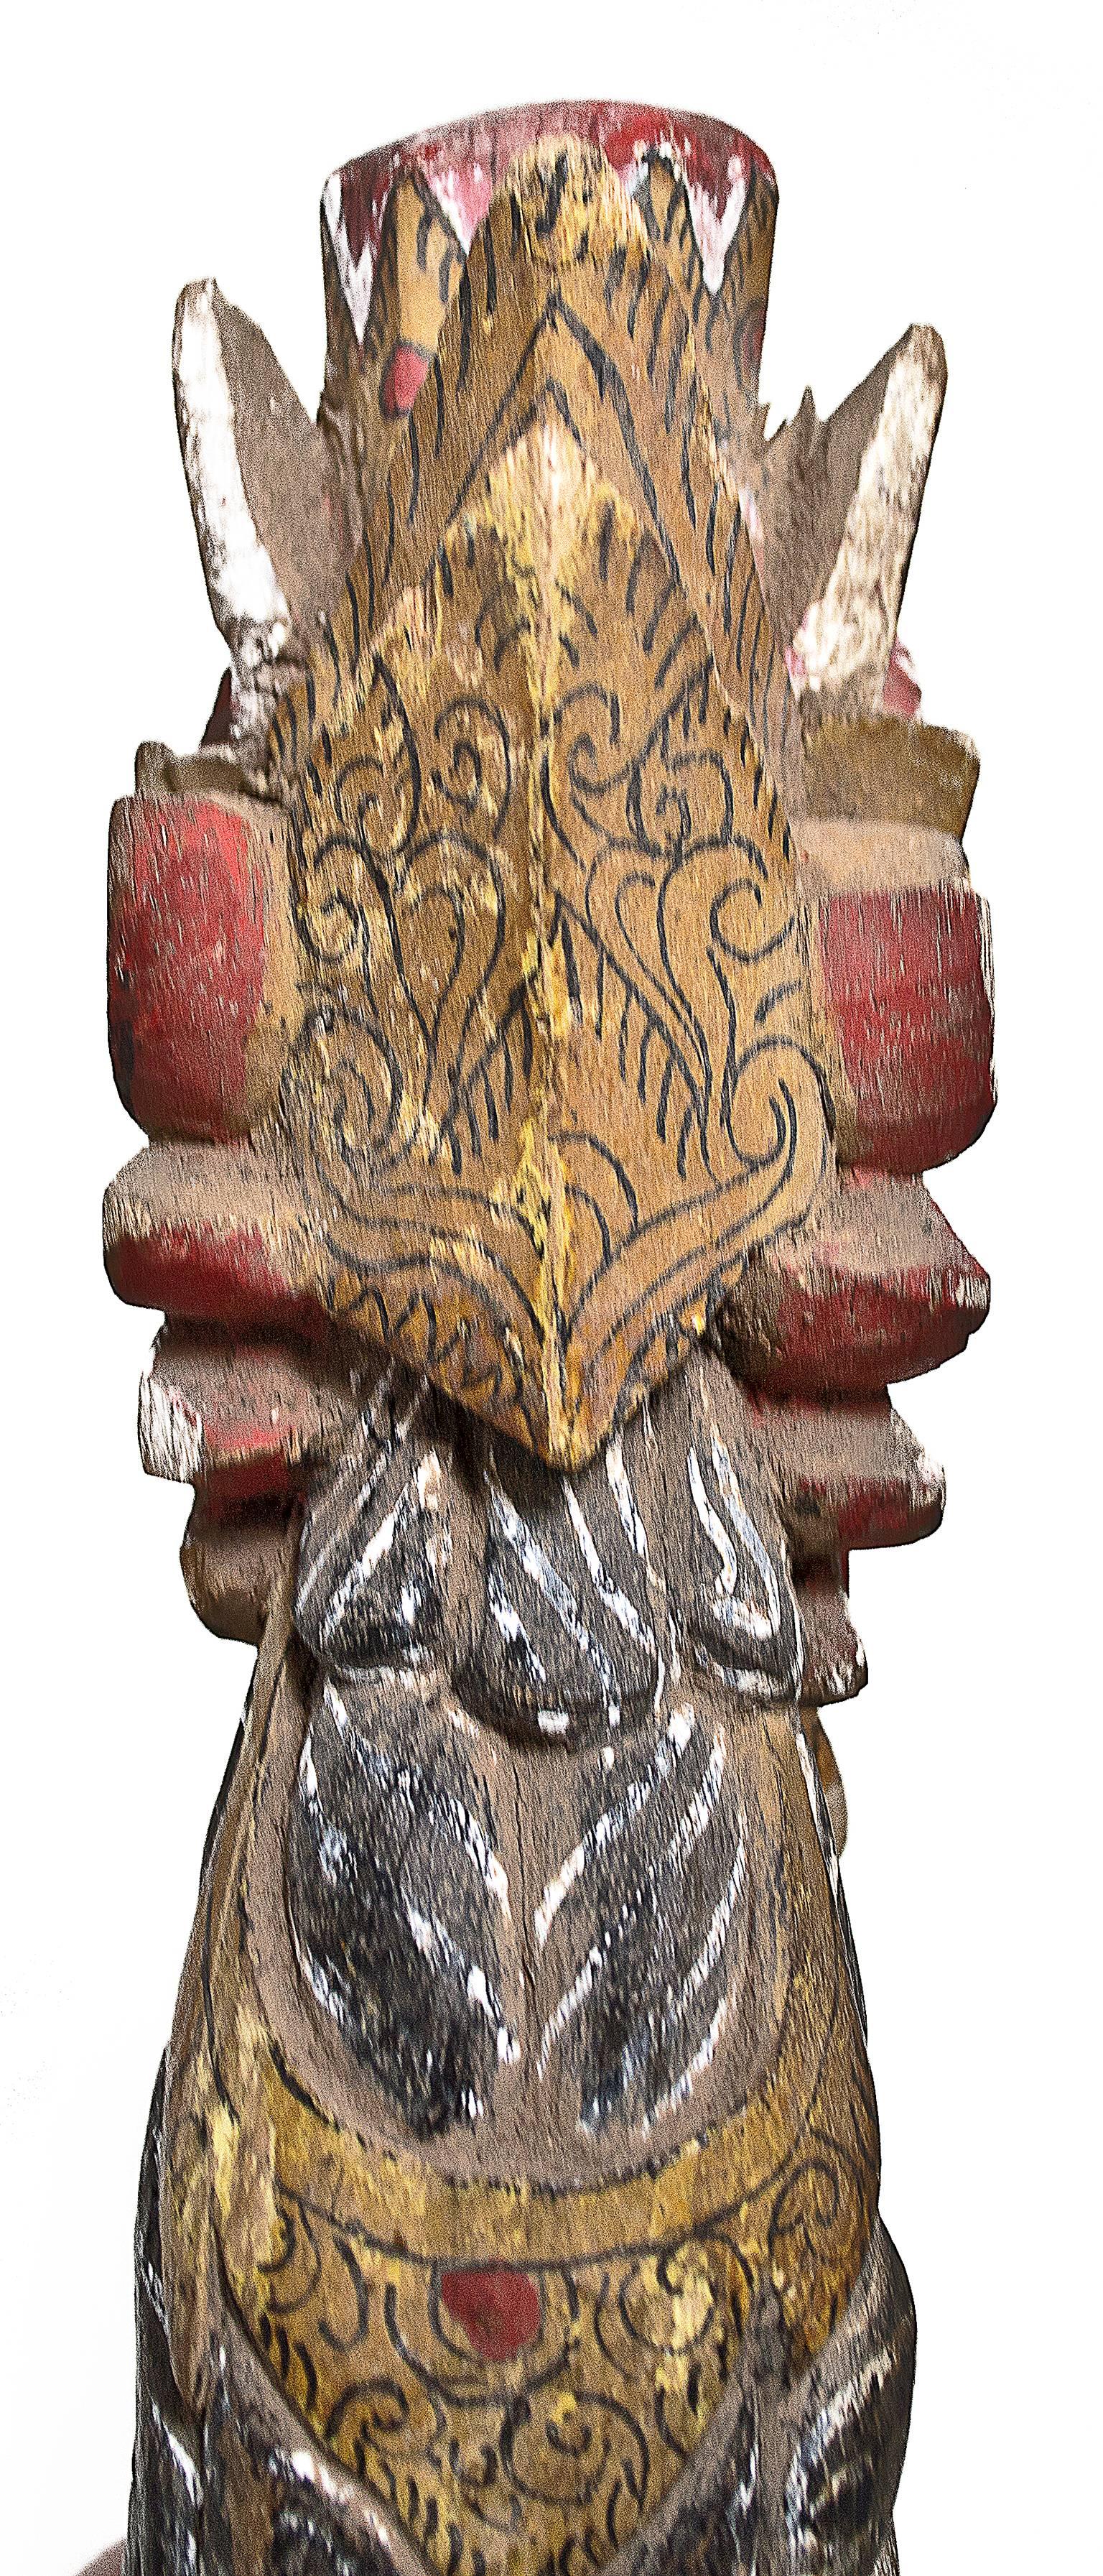 garuda wood carving